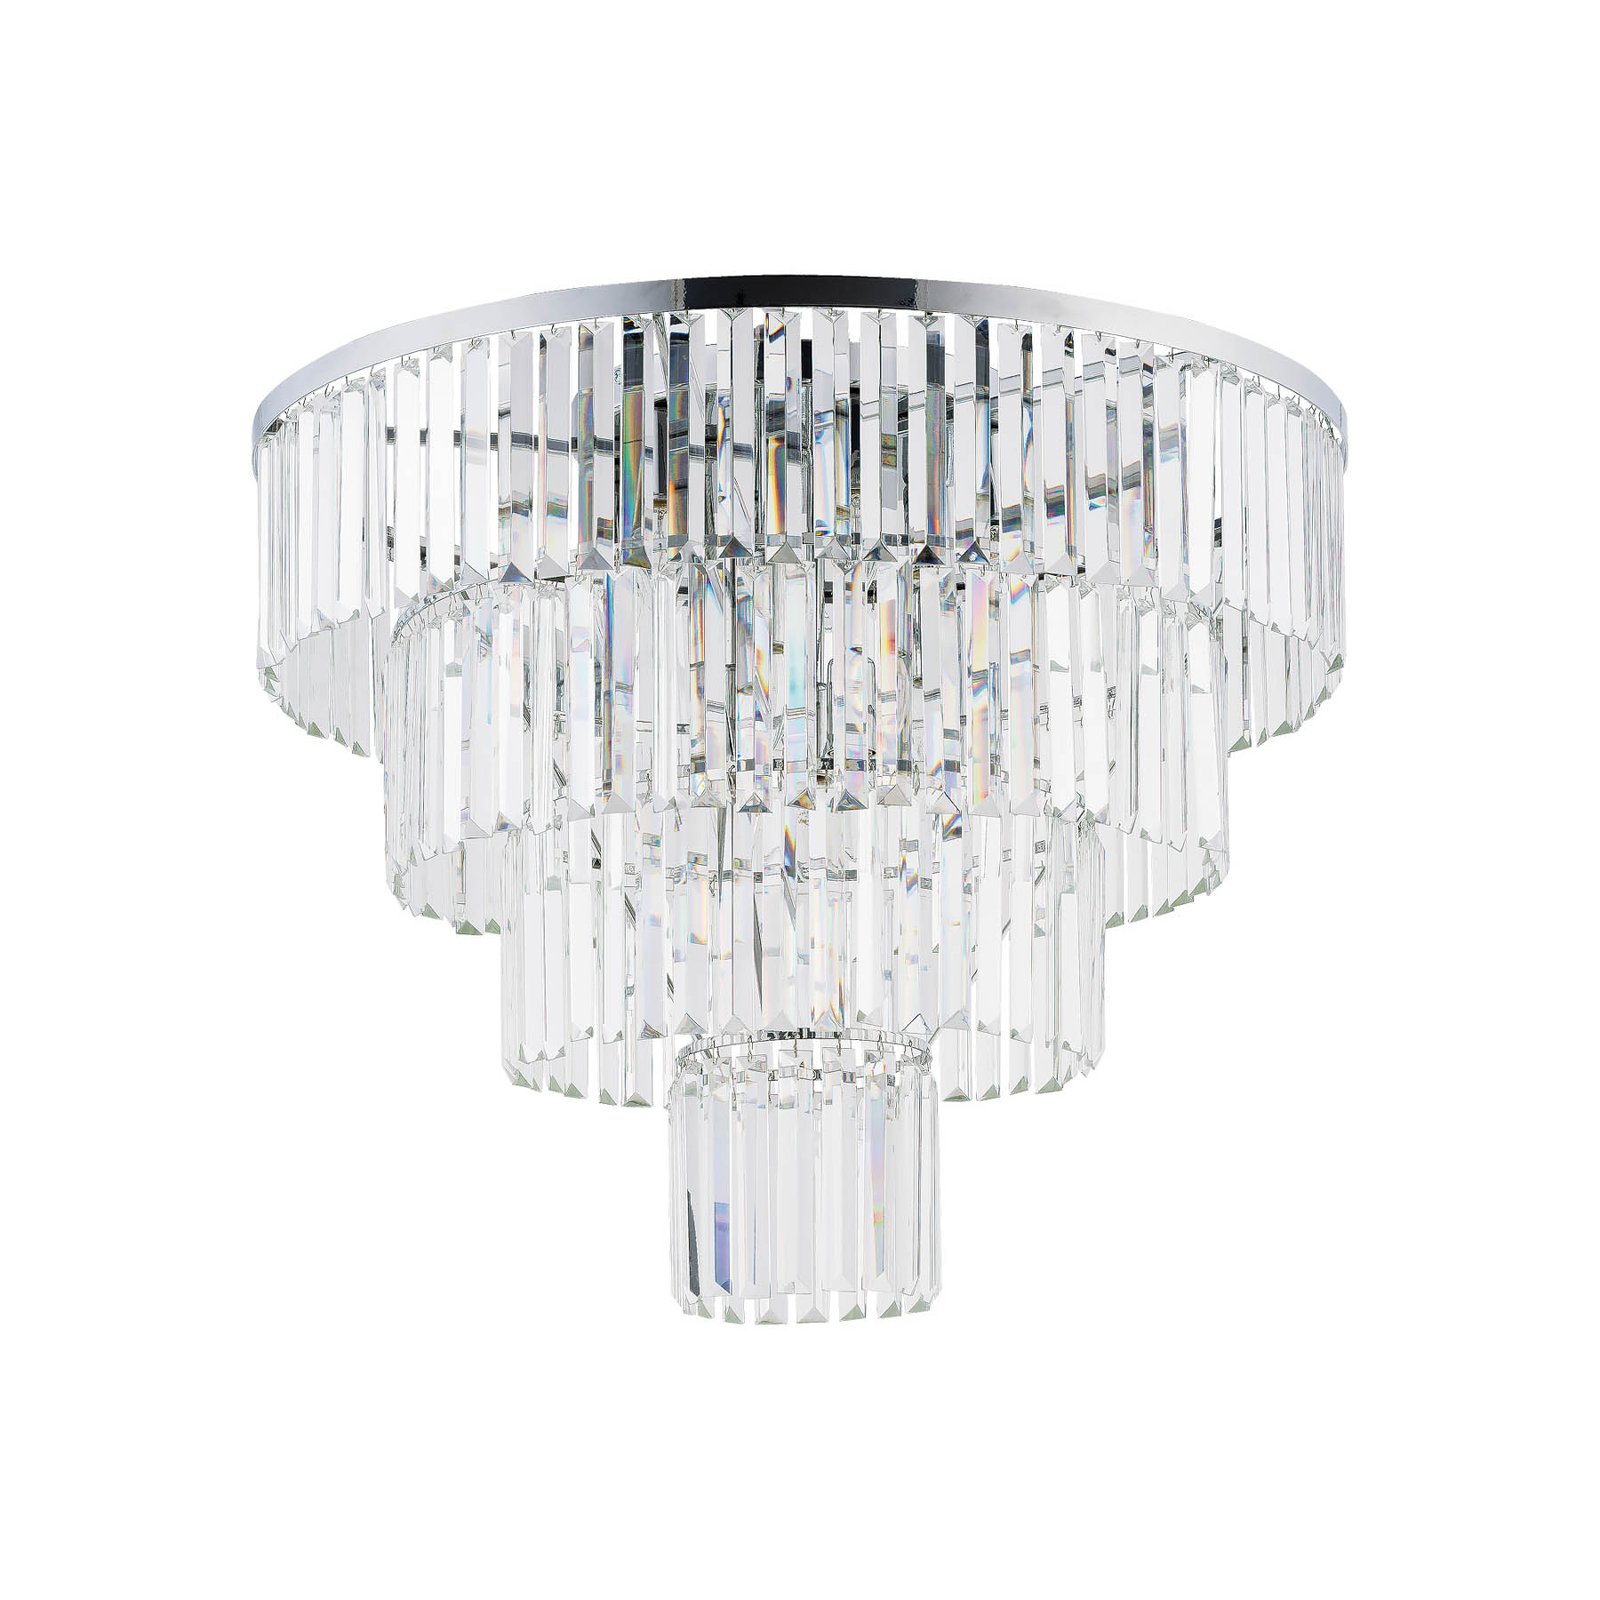 Stropní svítidlo Cristal, transparentní/stříbrné, Ø 71 cm